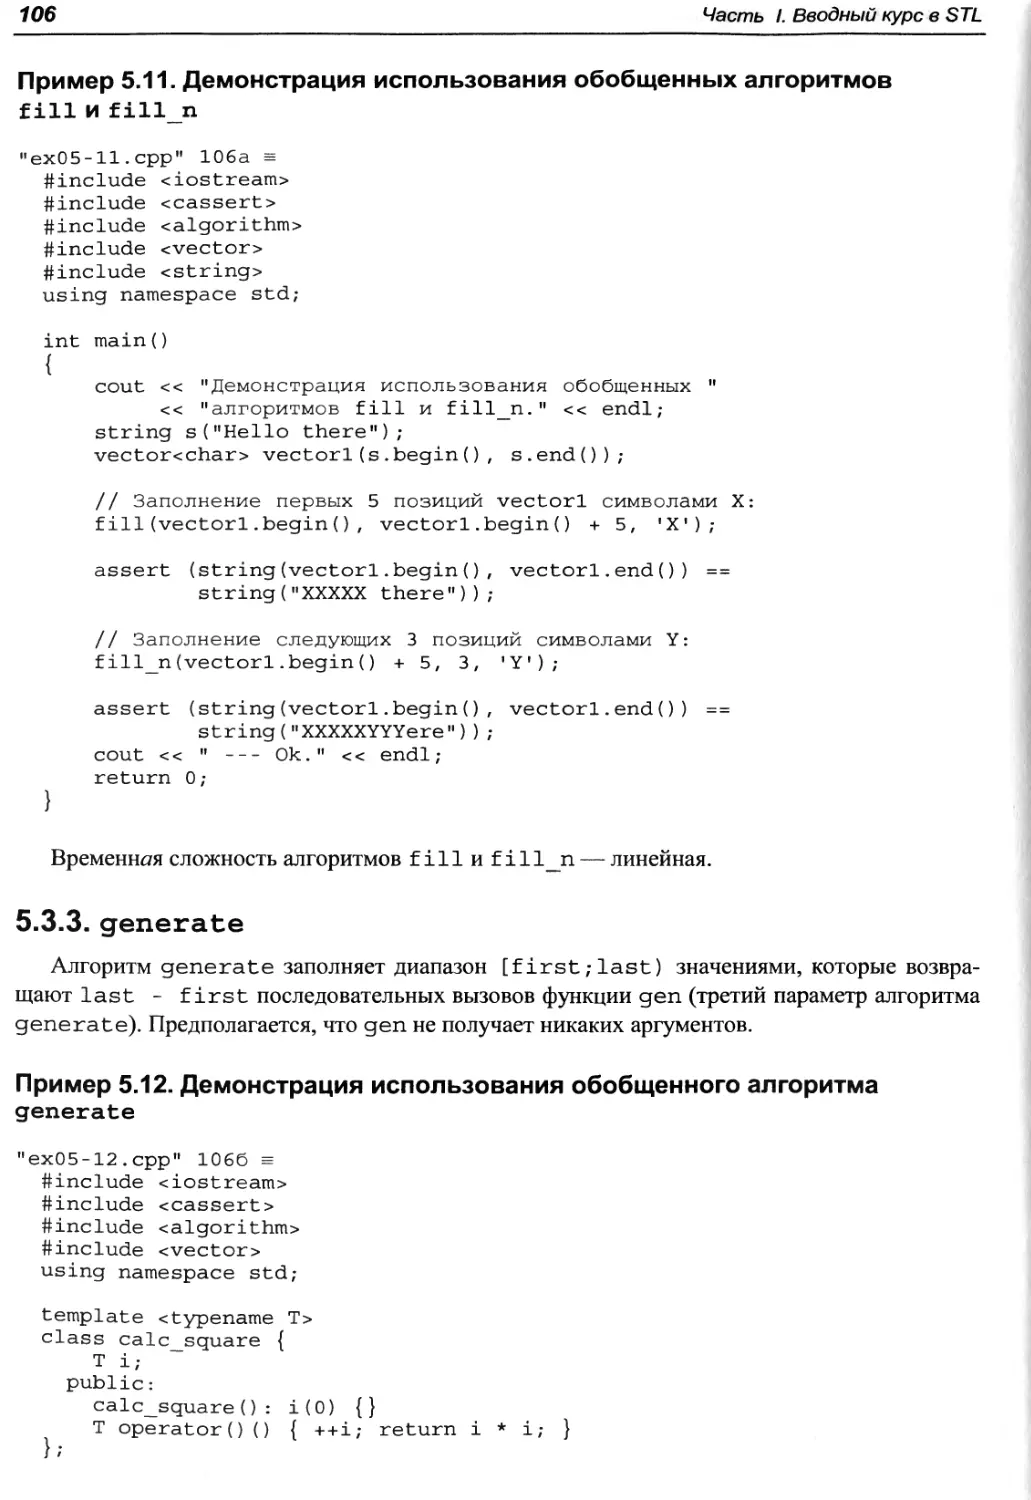 Пример 5.11. Демонстрация использования обобщенных алгоритмов fill и fill_n
Пример 5.12. Демонстрация использования обобщенного алгоритма generate
5.3.3. generate